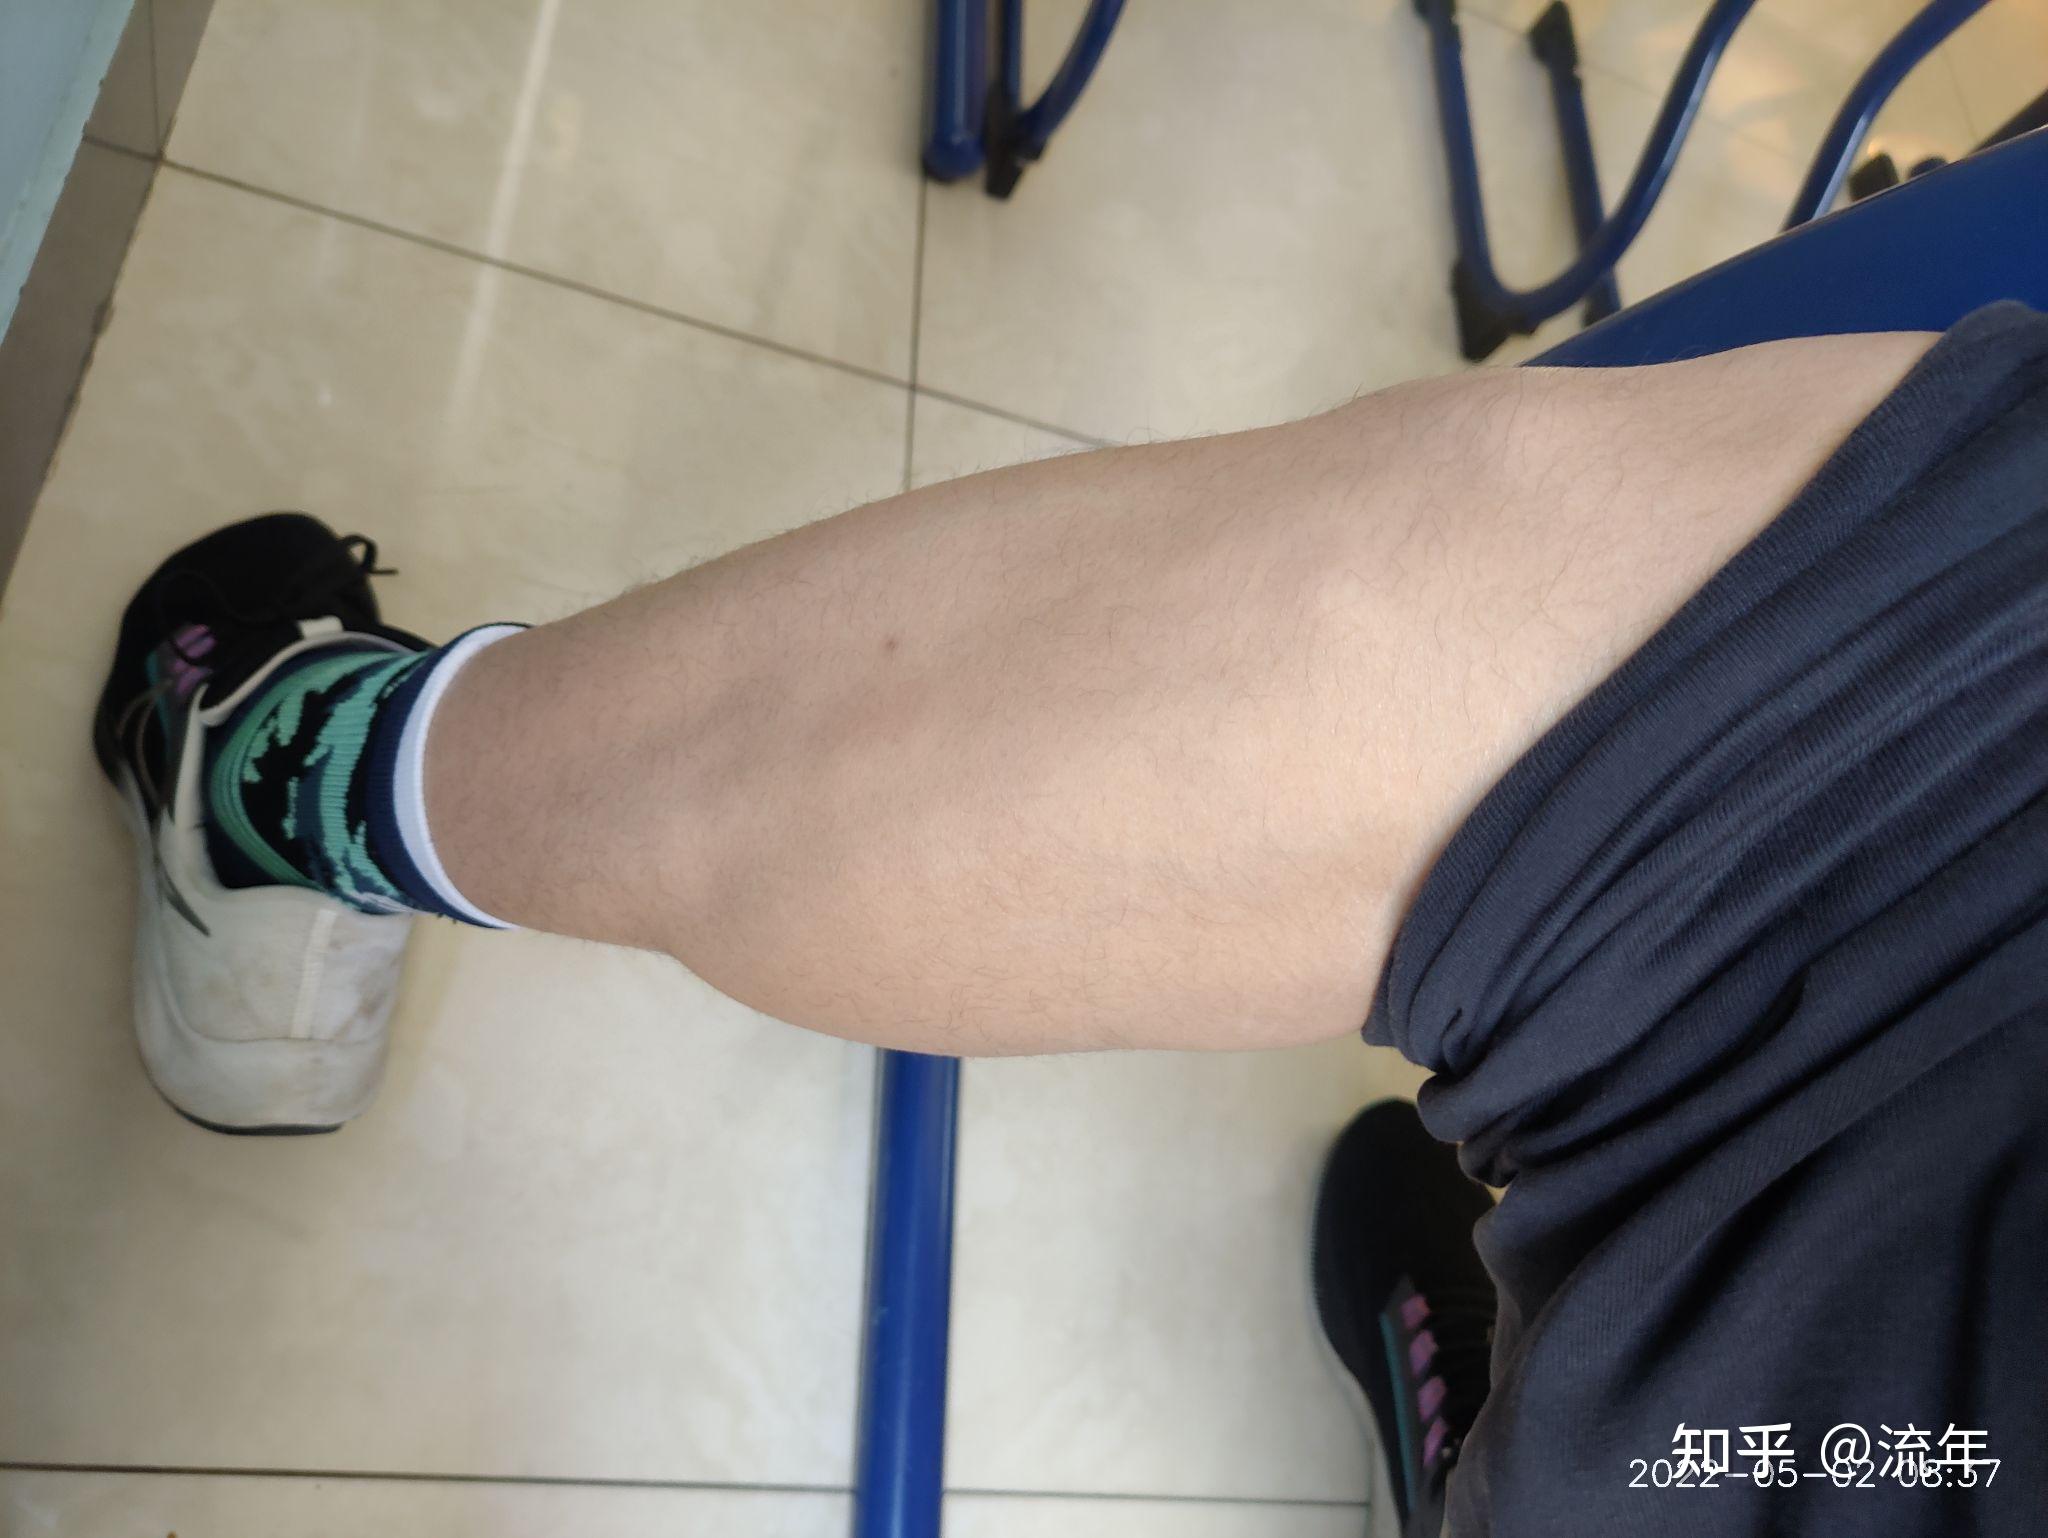 这样的小腿肌肉有什么影响吗